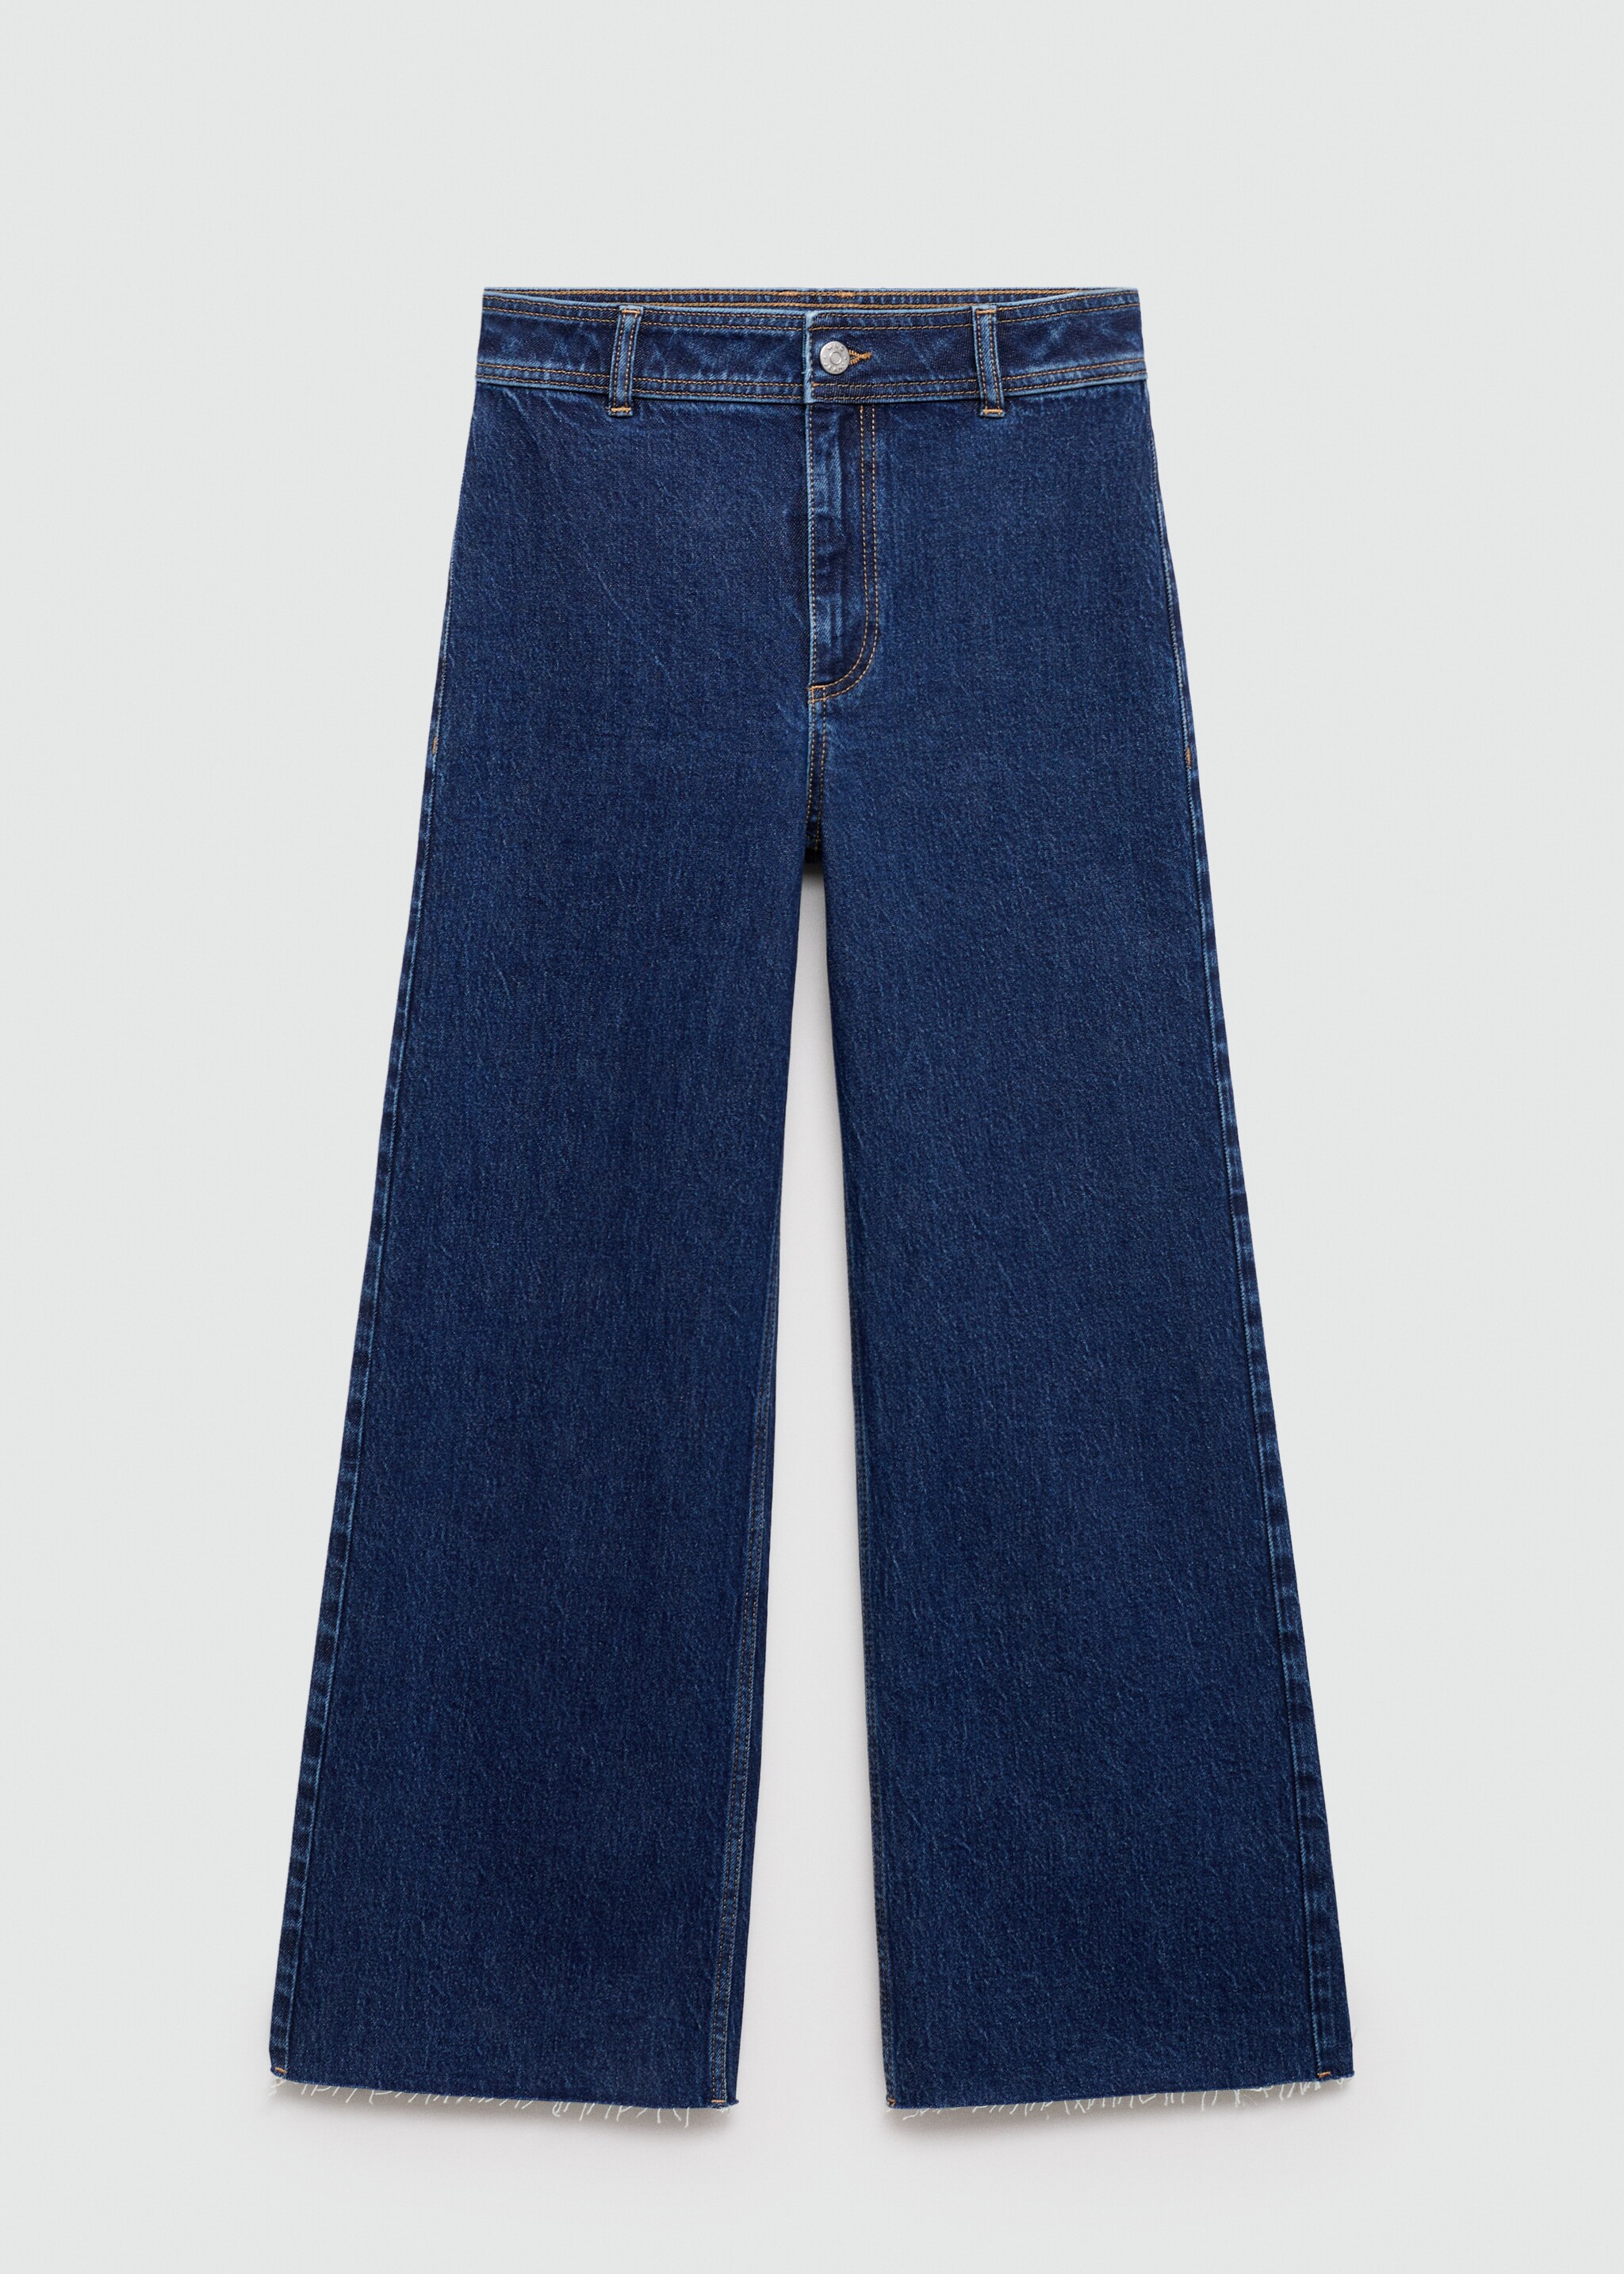 Culotte-Jeans mit hohem Bund Catherin - Artikel ohne Model